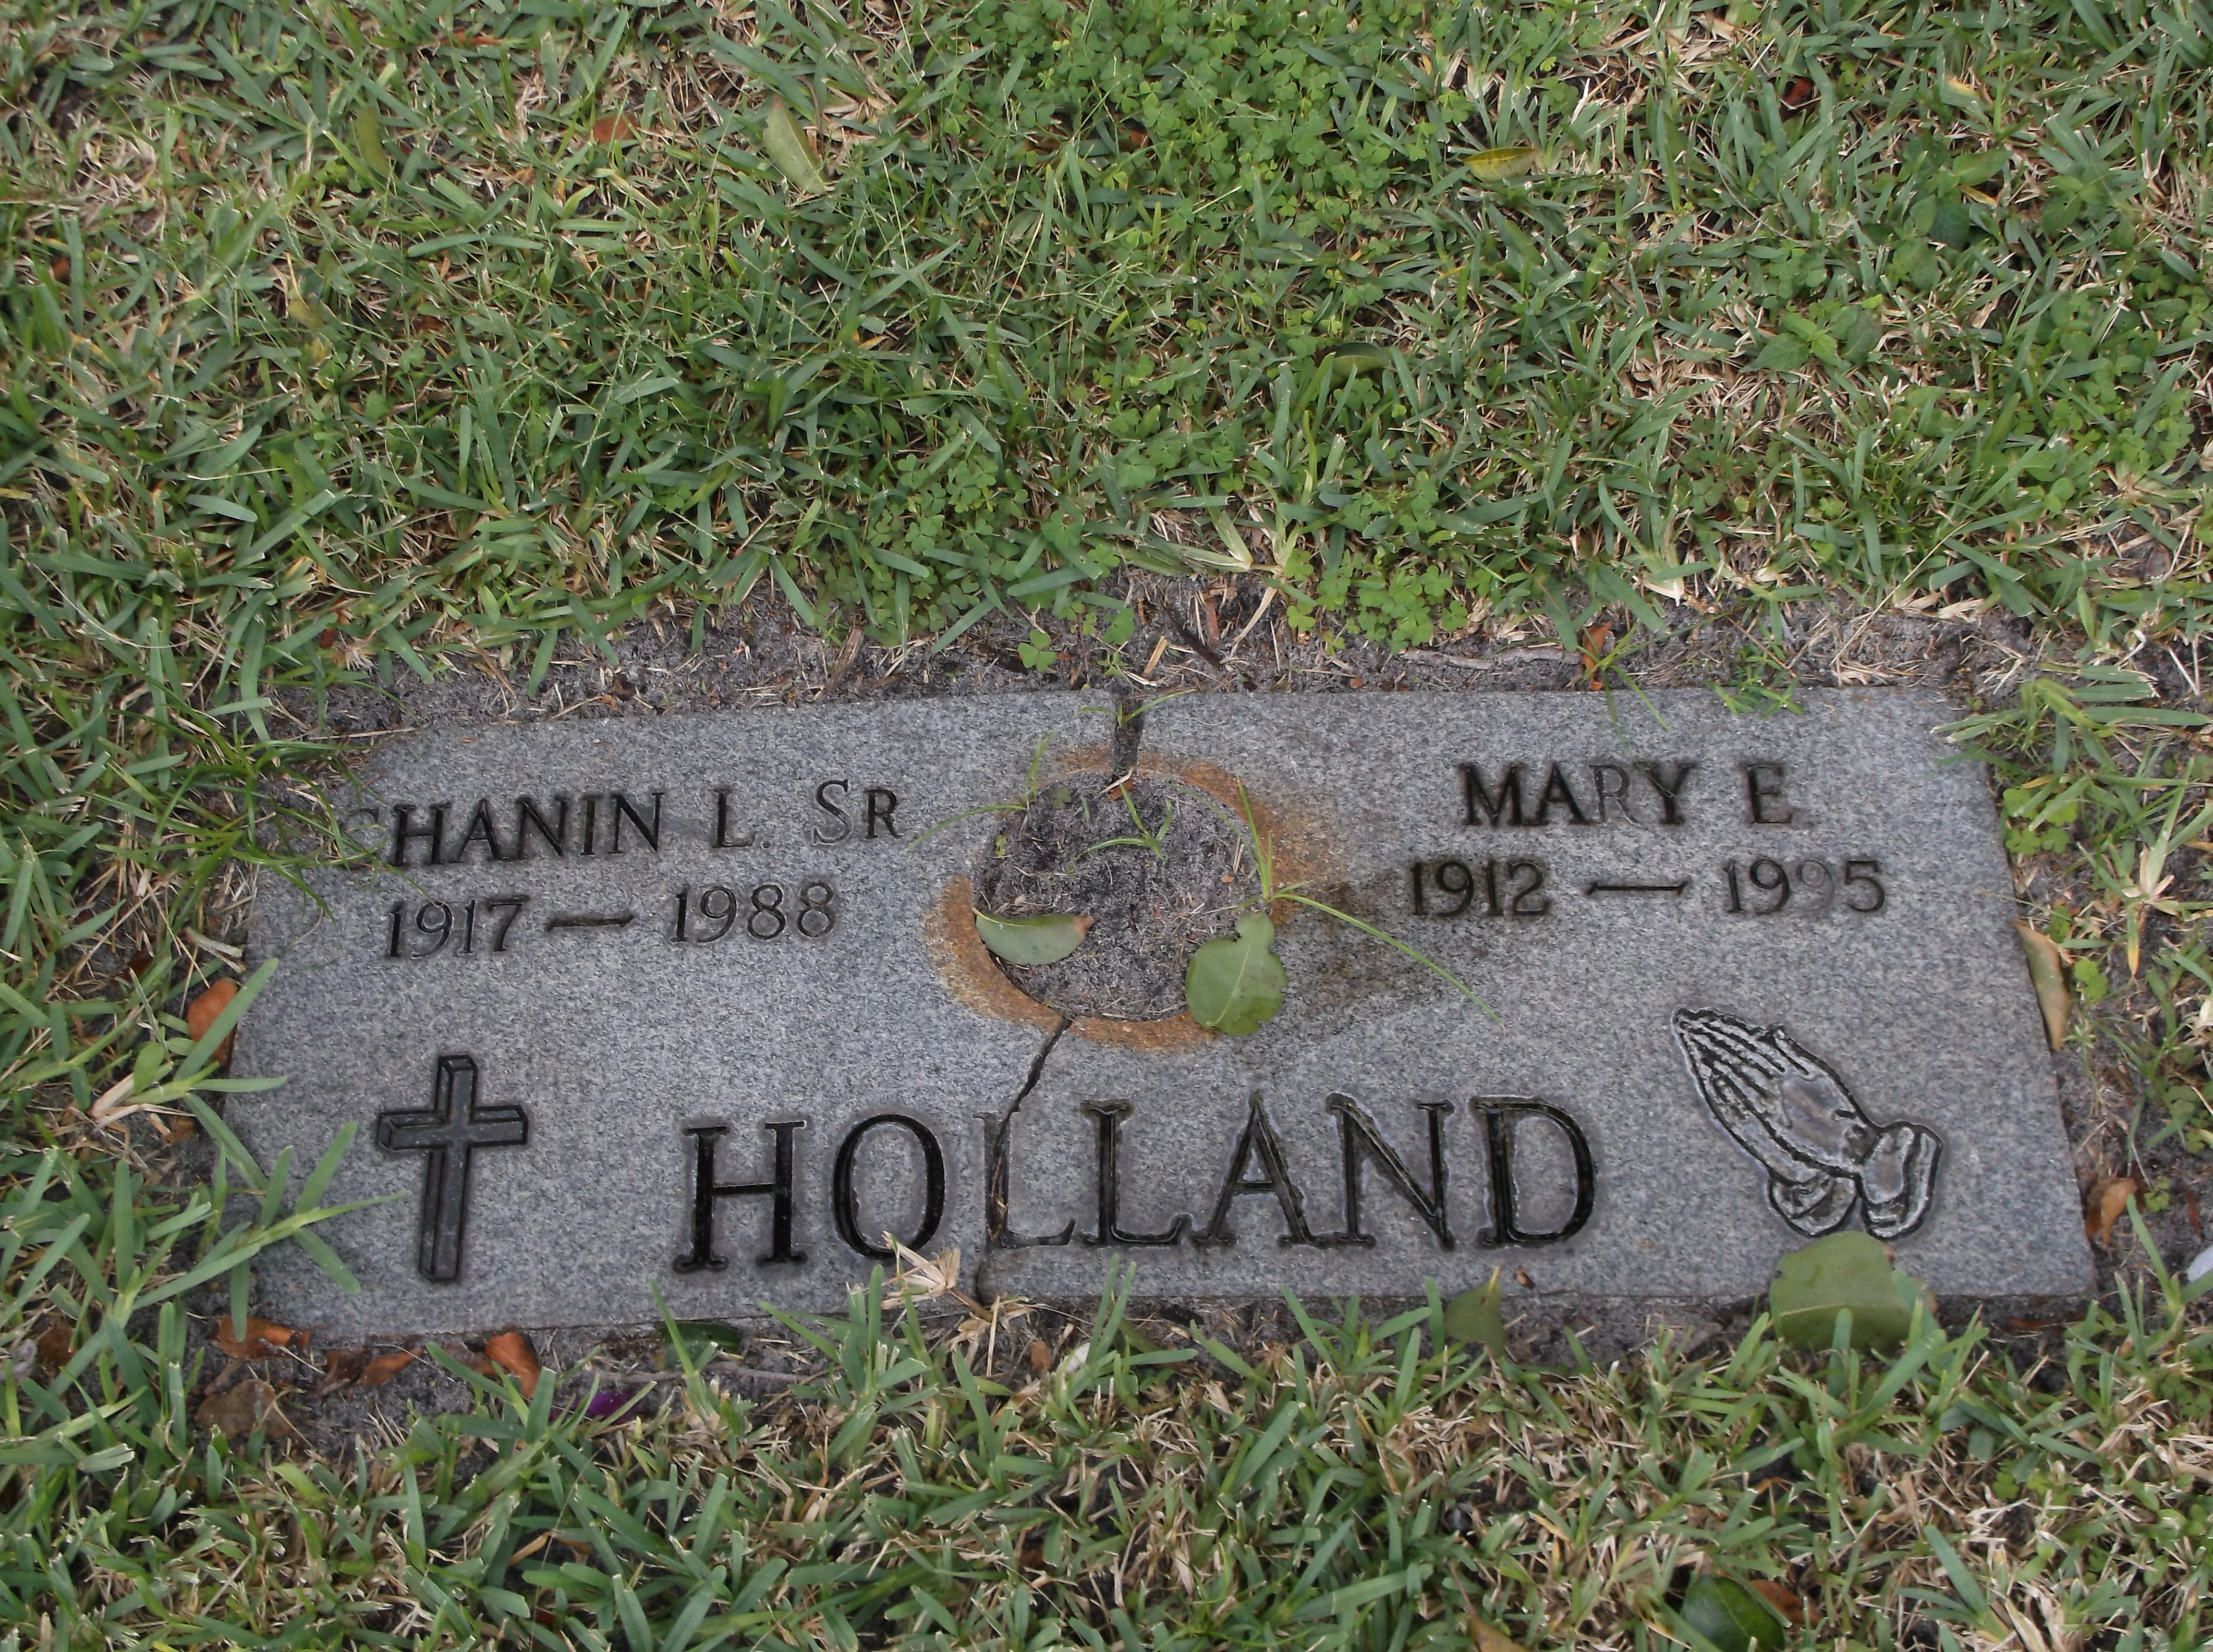 Mary E Holland